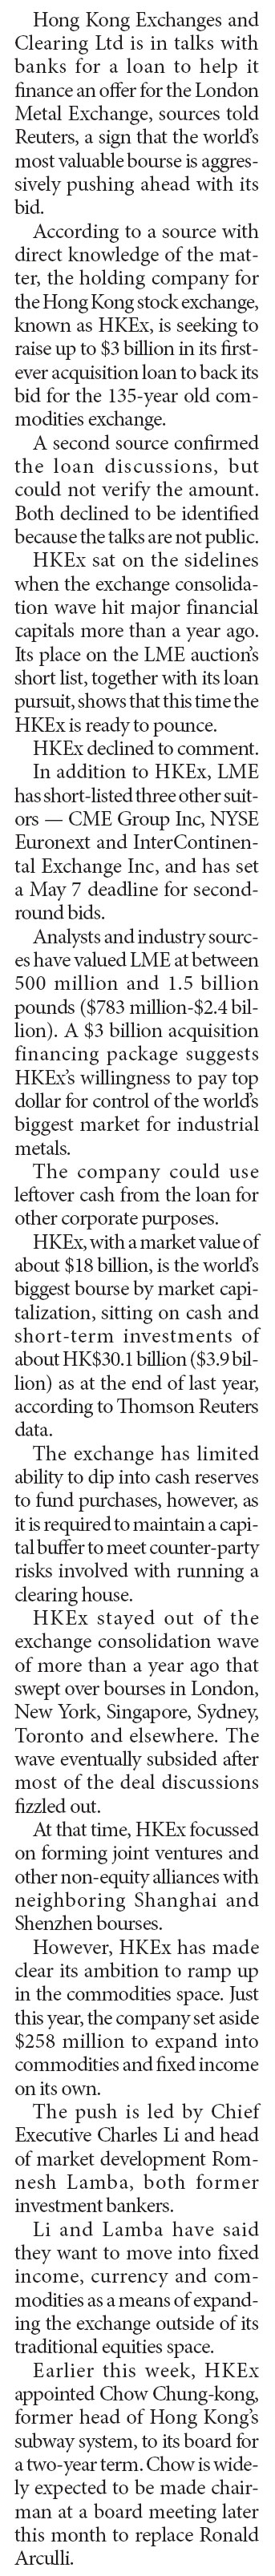 HKEx taps bank financing LME bid